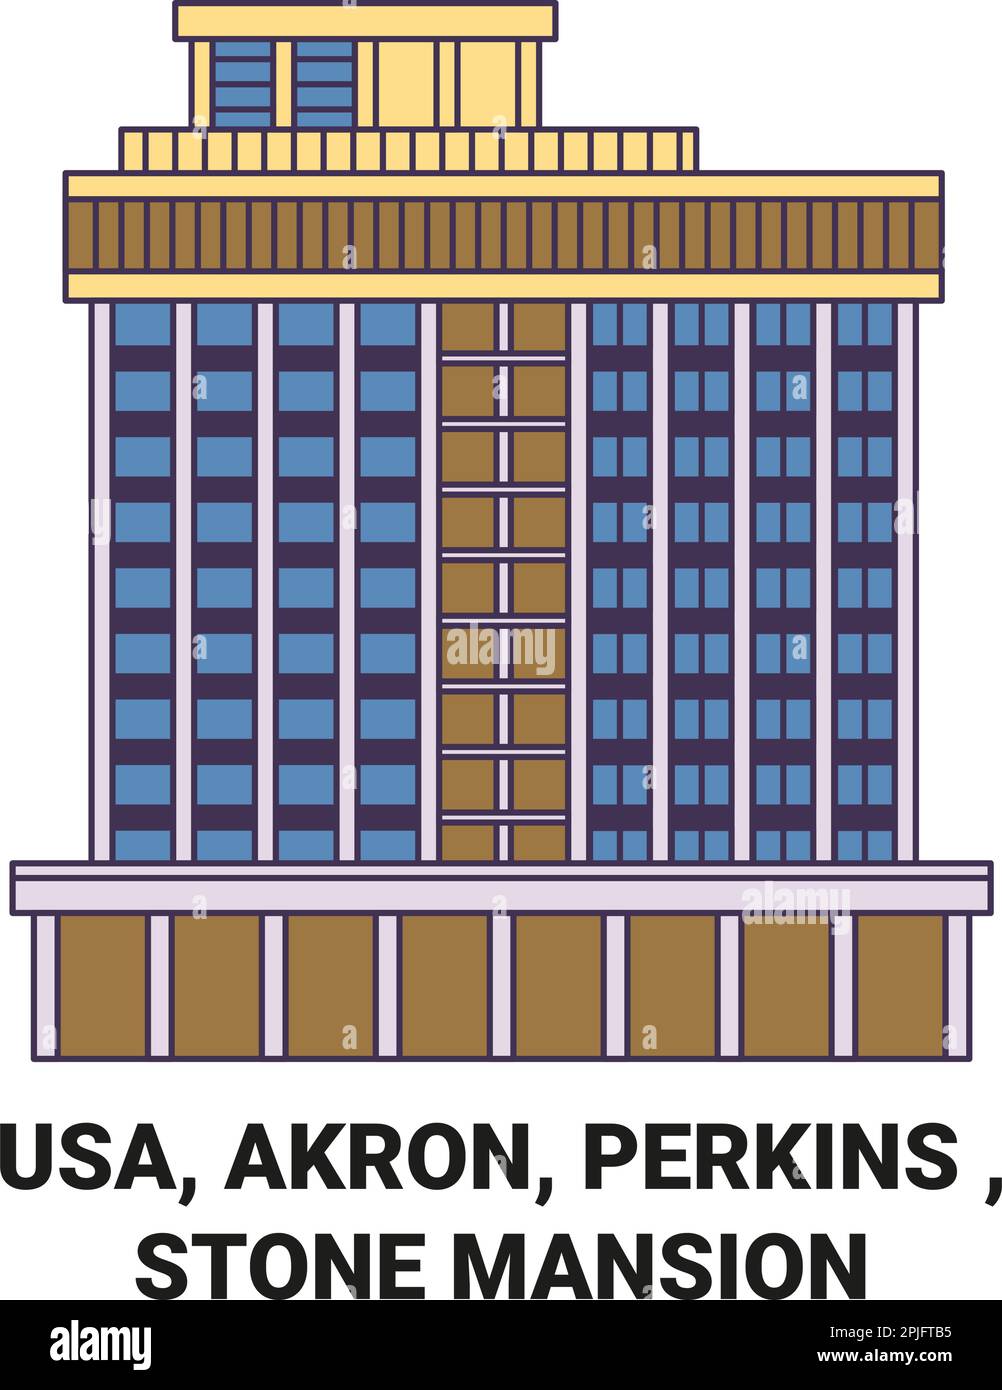 USA, Akron, Perkins, Stone Mansion Reise-Wahrzeichen Vektordarstellung Stock Vektor